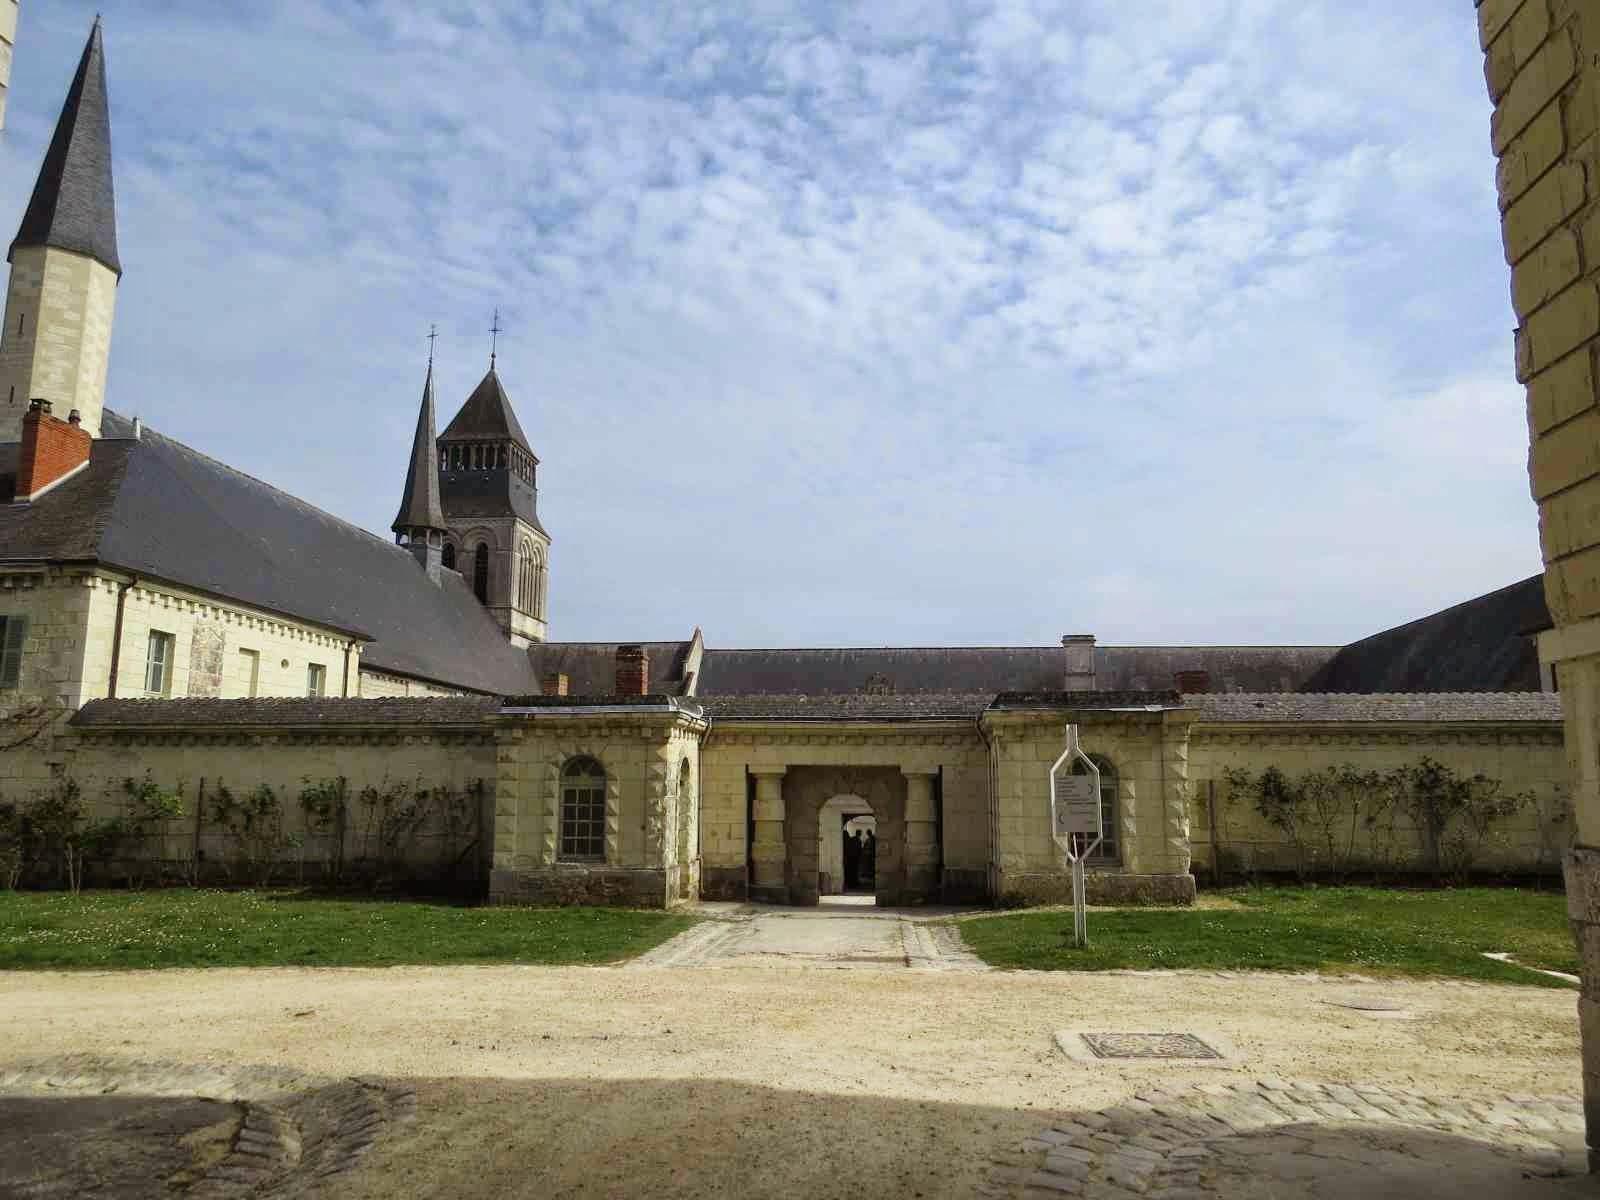 Les villages de Montsoreau & Fontevraud l'Abbaye dans l'Anjou